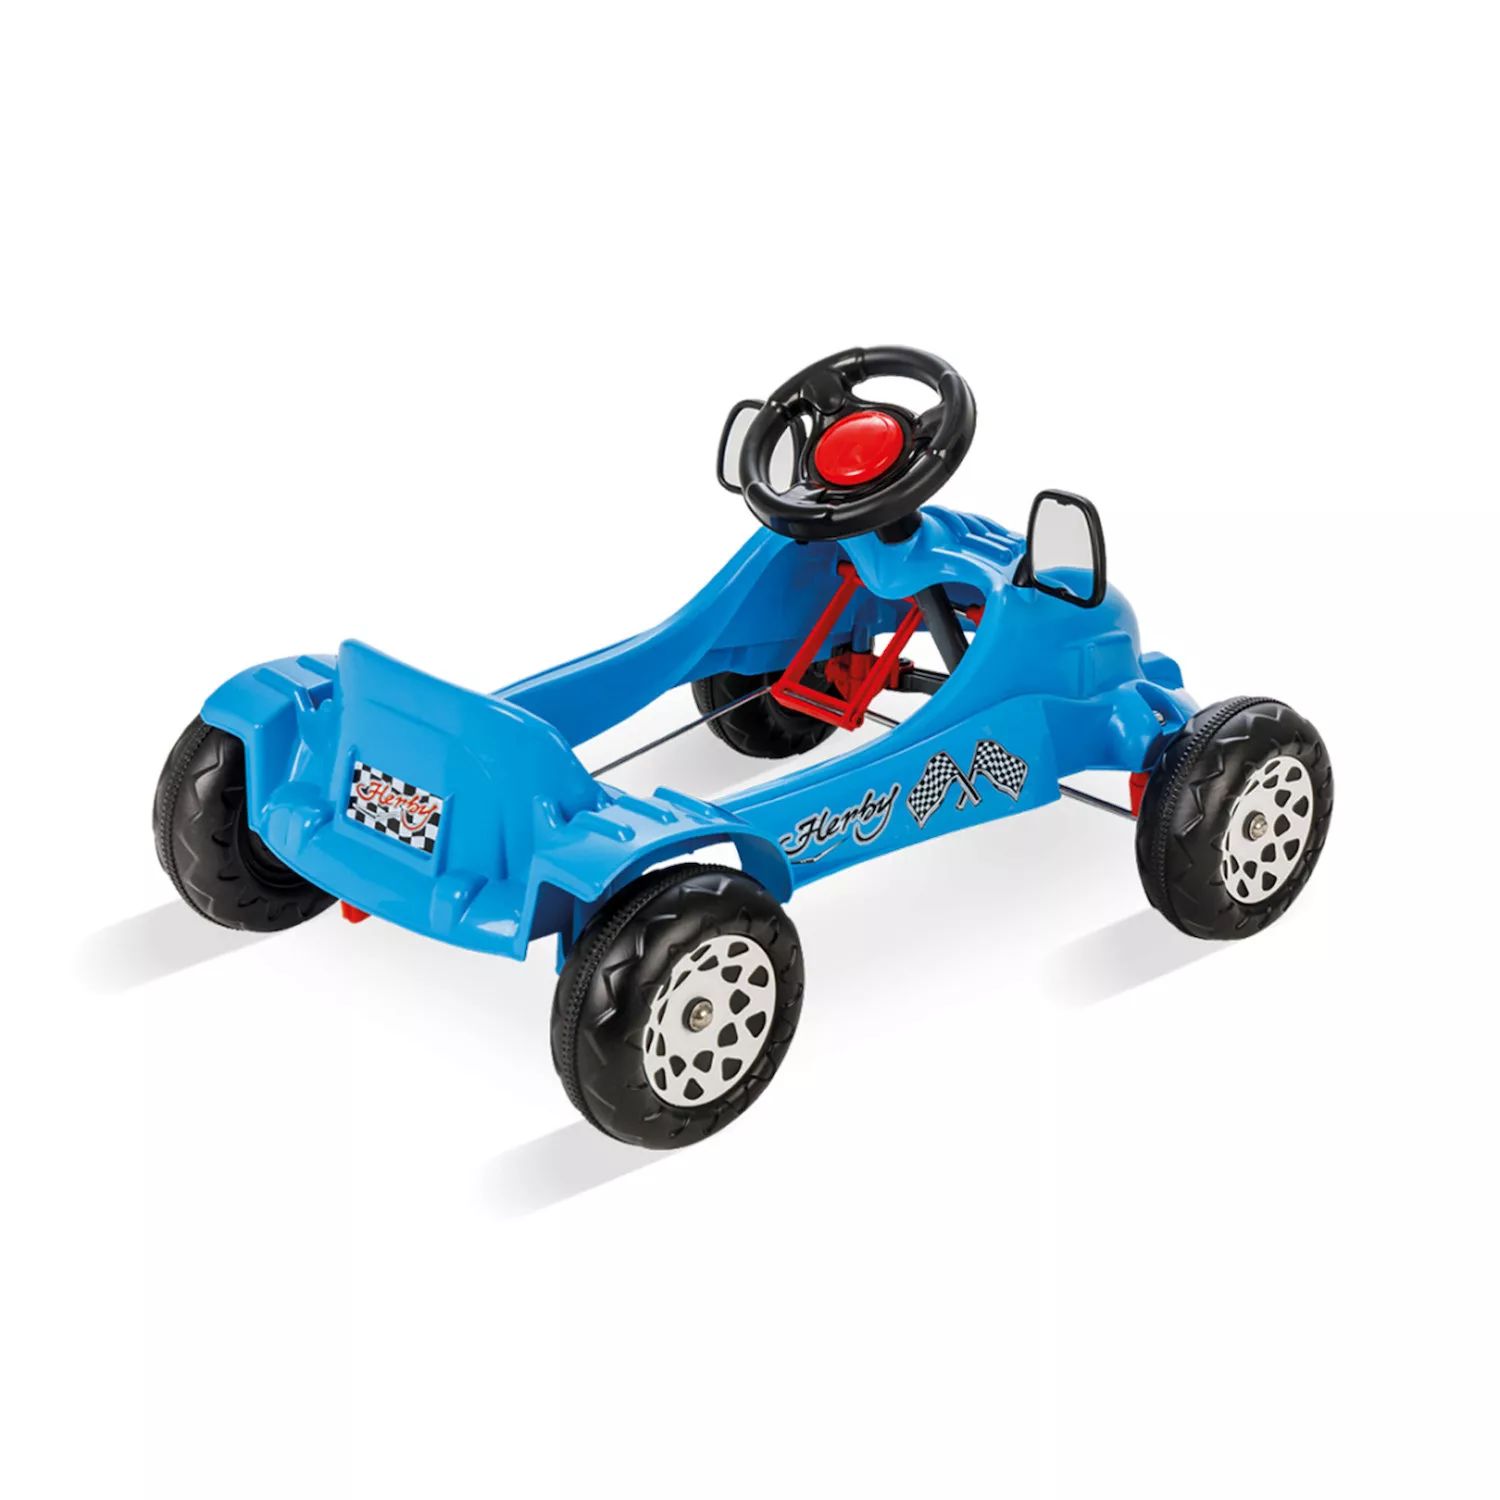 Pilsan 07 302B Педальная машинка Herby с подвижными зеркалами и звуковым сигналом для детей от 3 лет, синий Pilsan